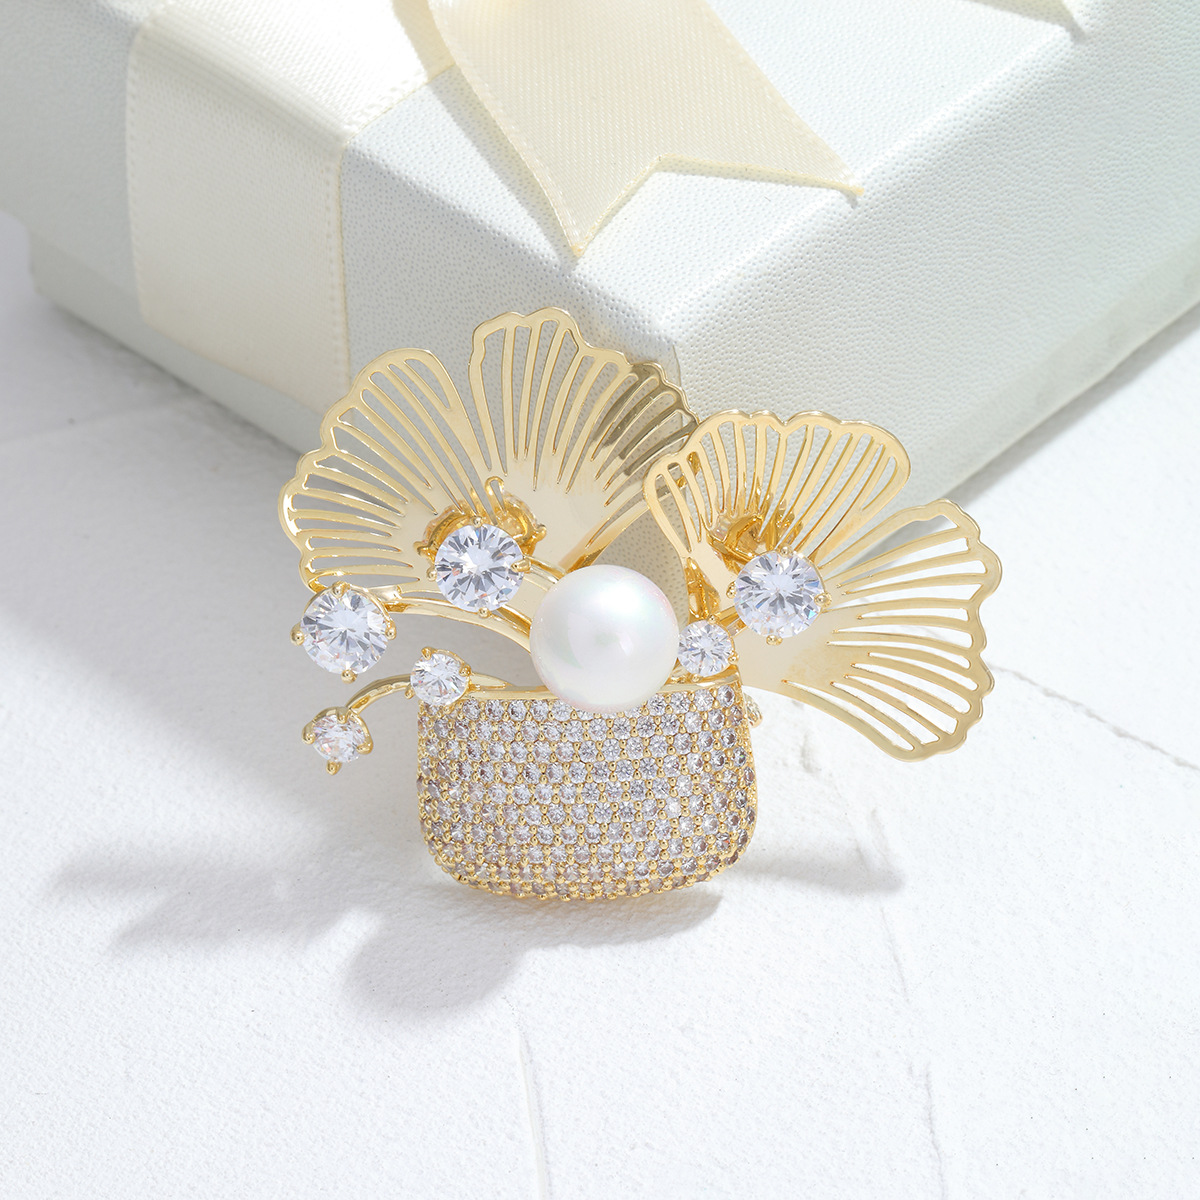 1:golden white beads